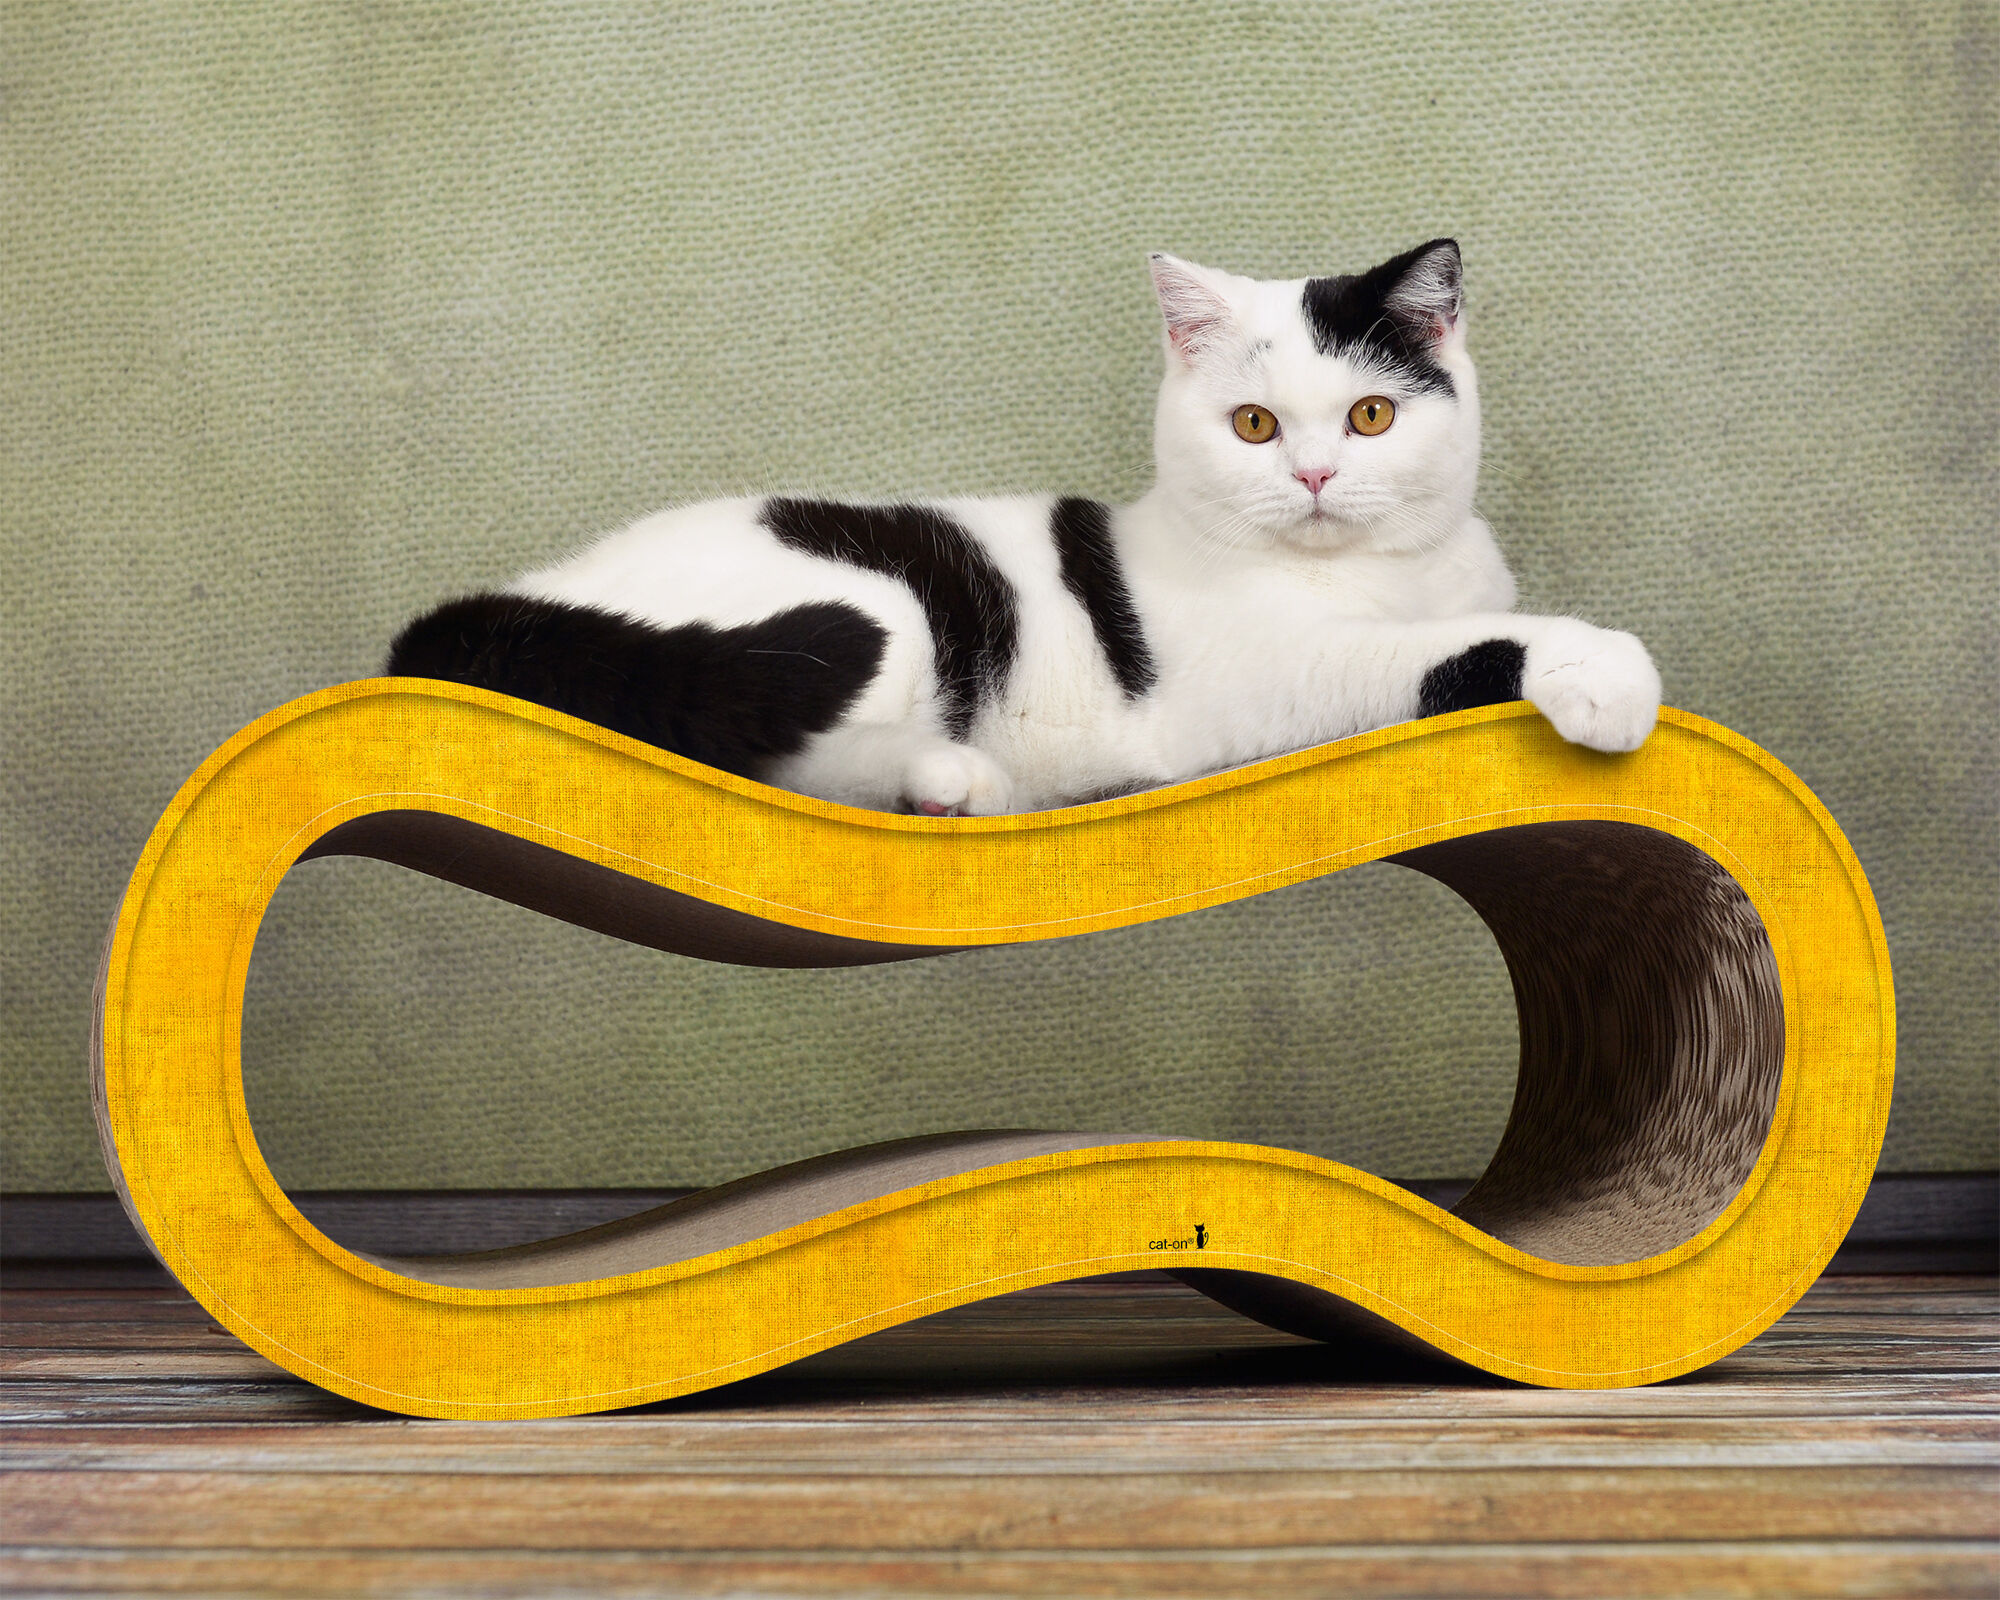 Design cardboard cat scratcher Singha M - Made in Germany